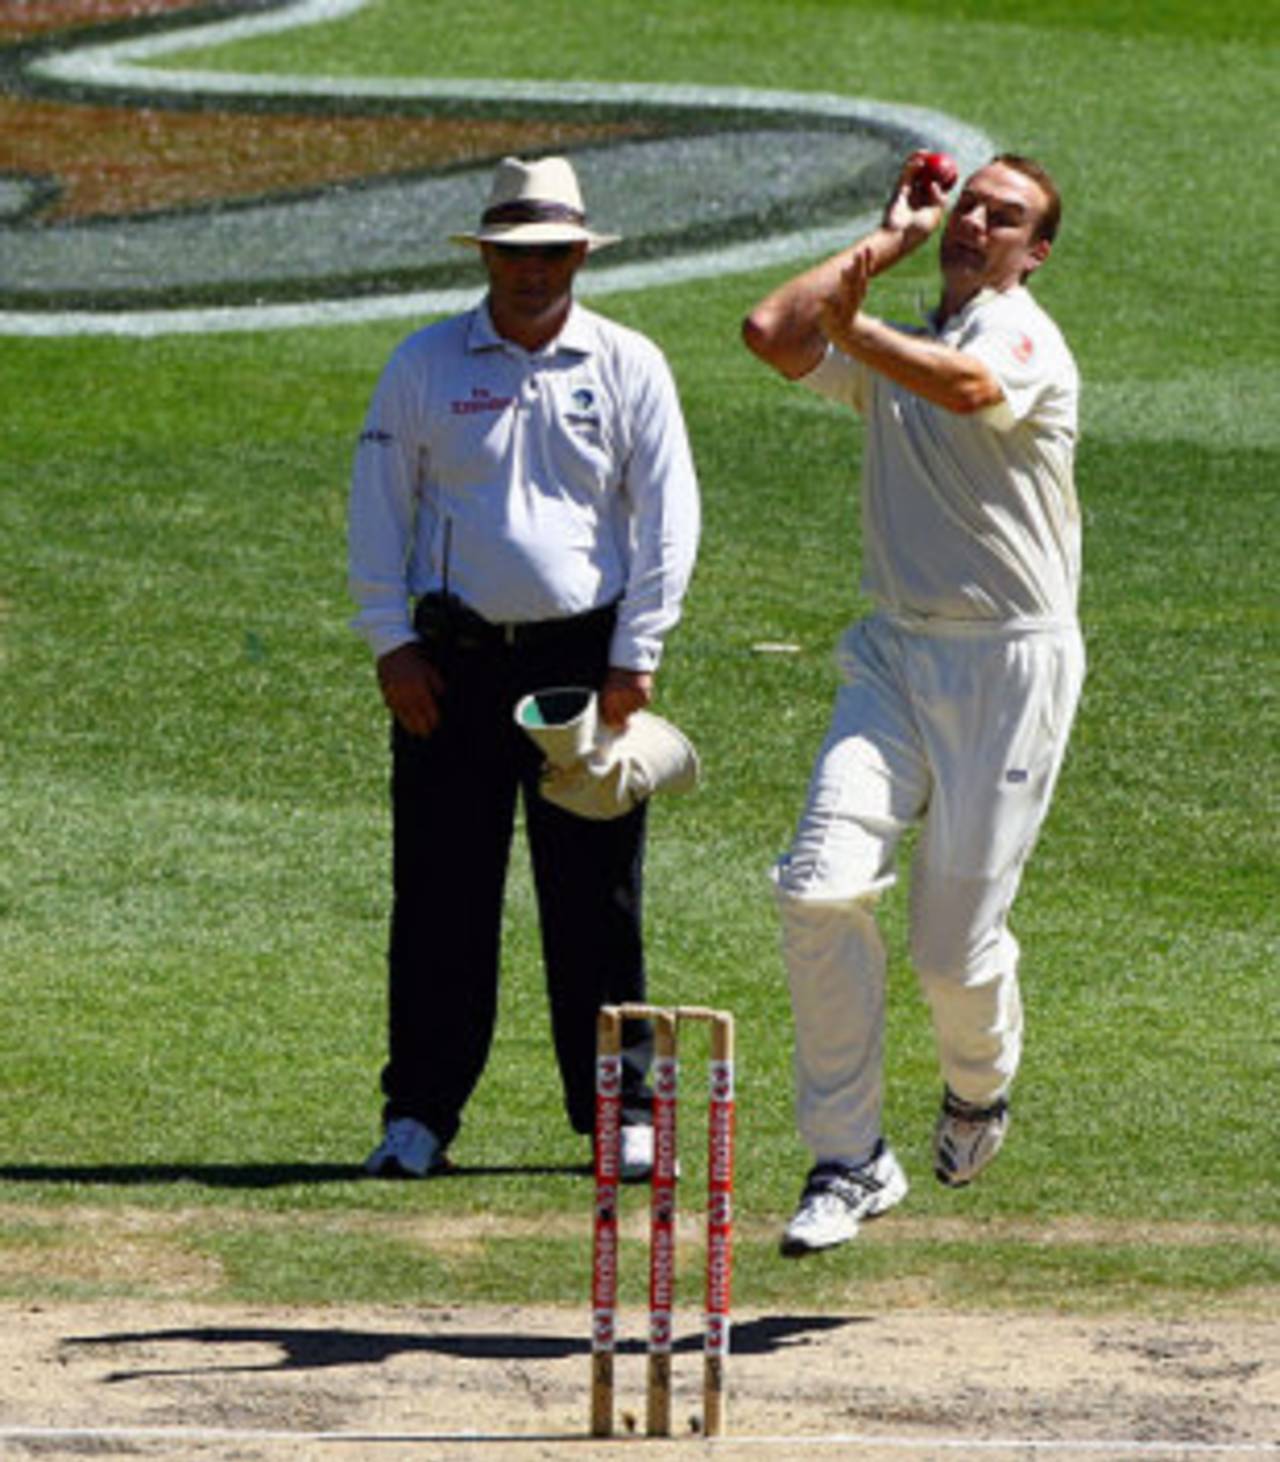 Stuart Clark runs in to bowl, Australia v India, 1st Test, Melbourne, 4th day, December 29, 2007